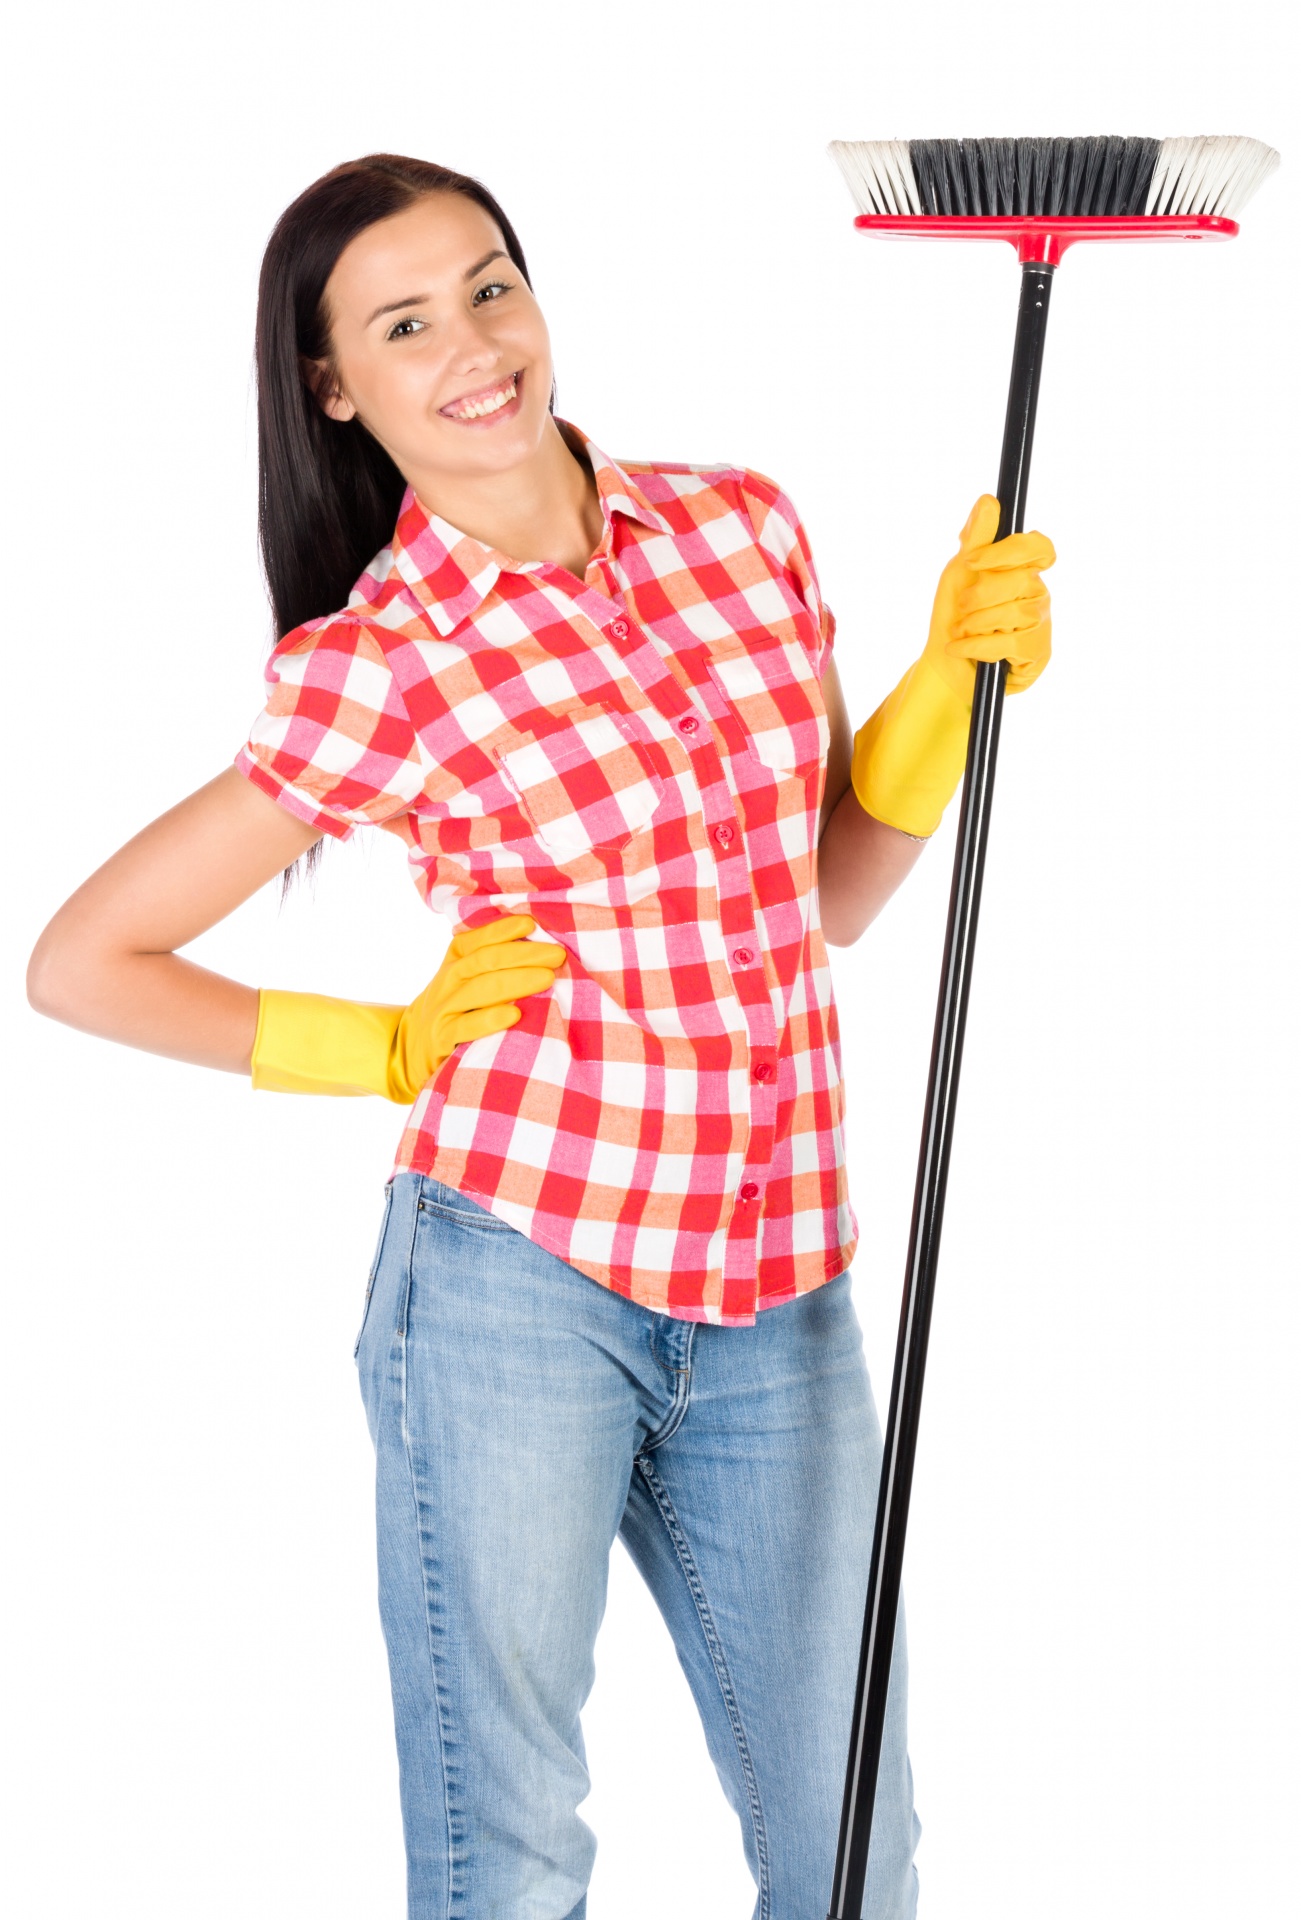 broom clean cleaner free photo